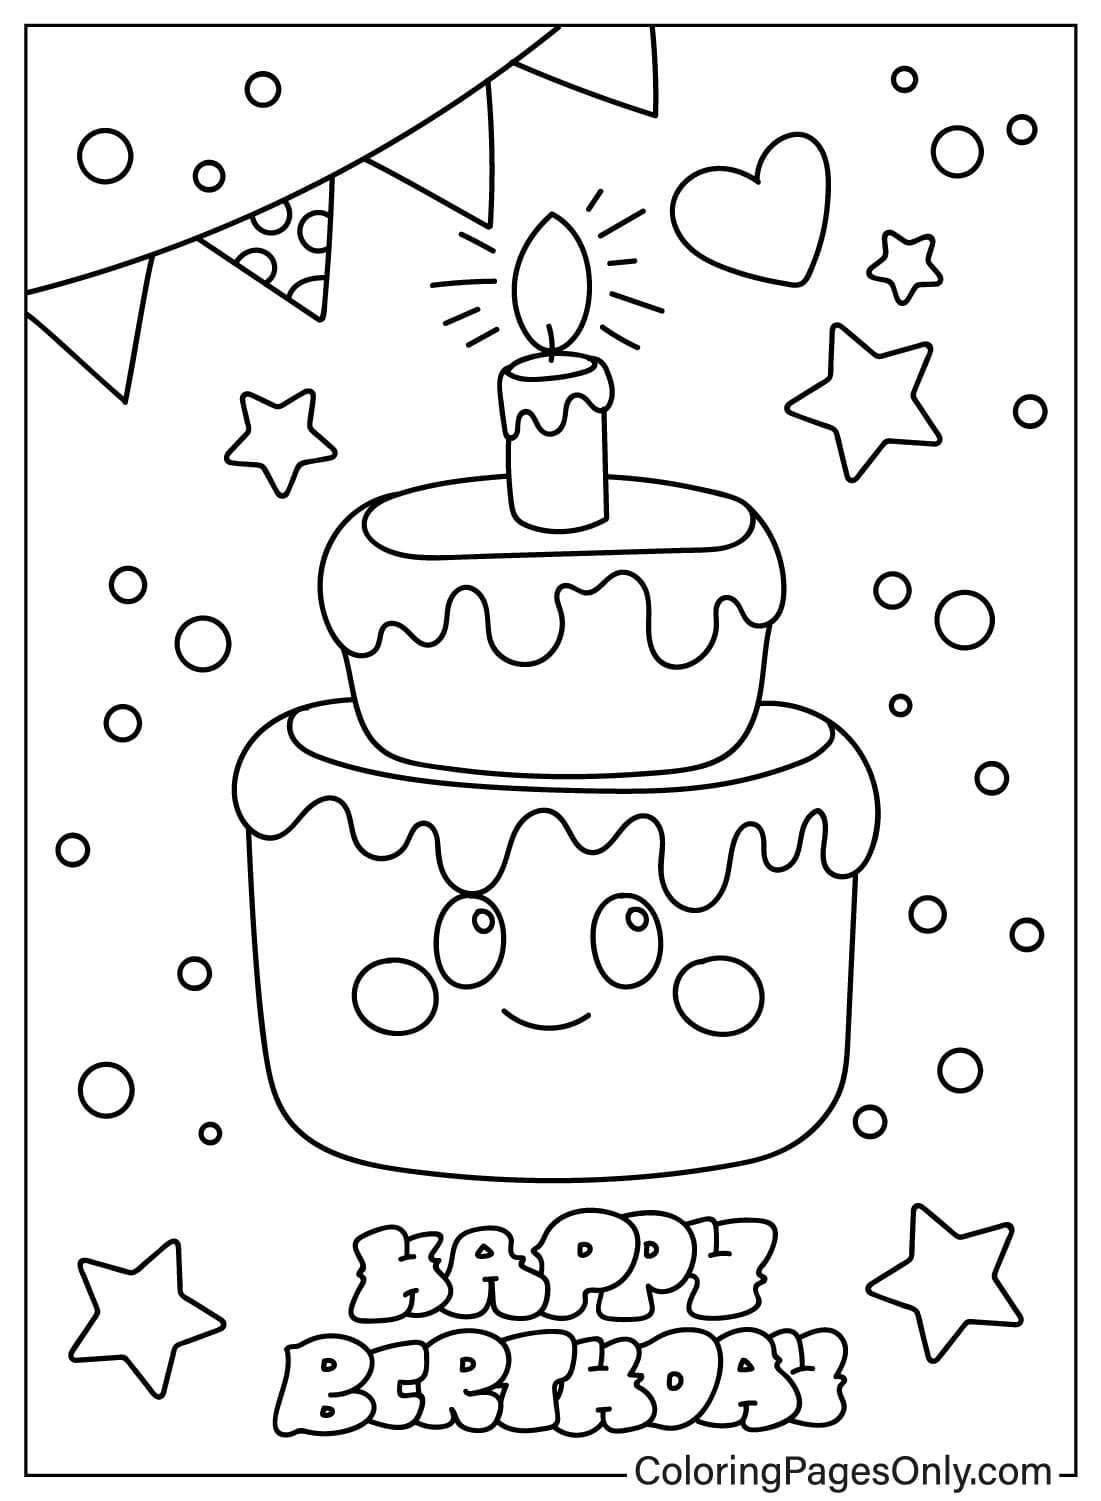 Página para colorir de cartão de feliz aniversário grátis do cartão de feliz aniversário